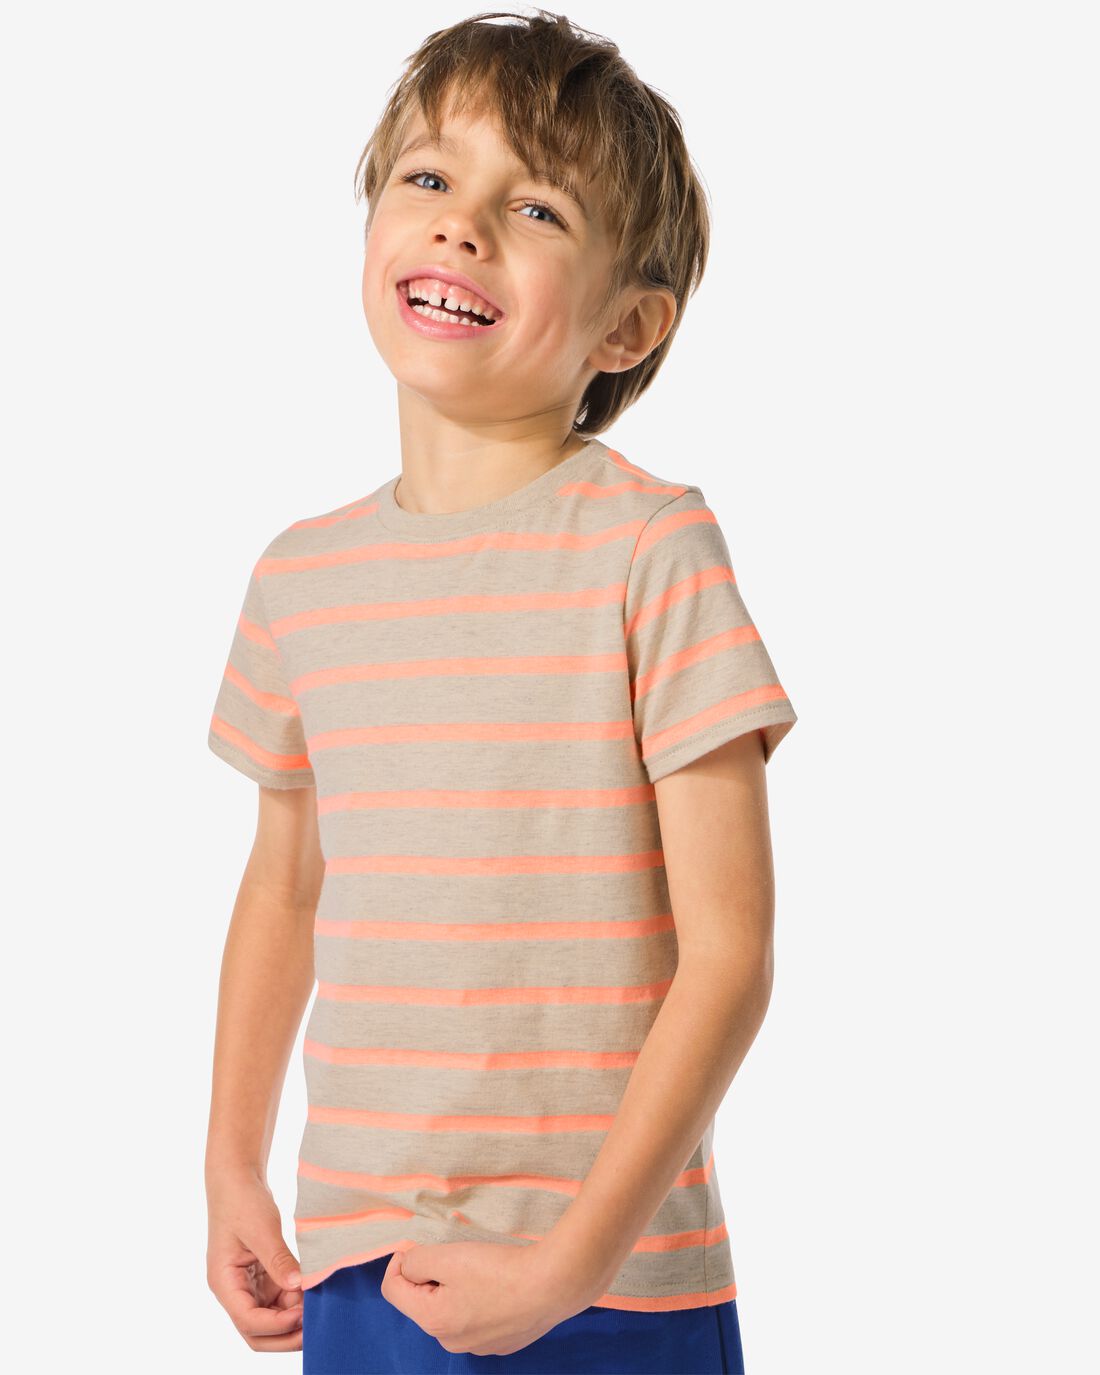 HEMA Kinder T-shirt Strepen Oranje (oranje)